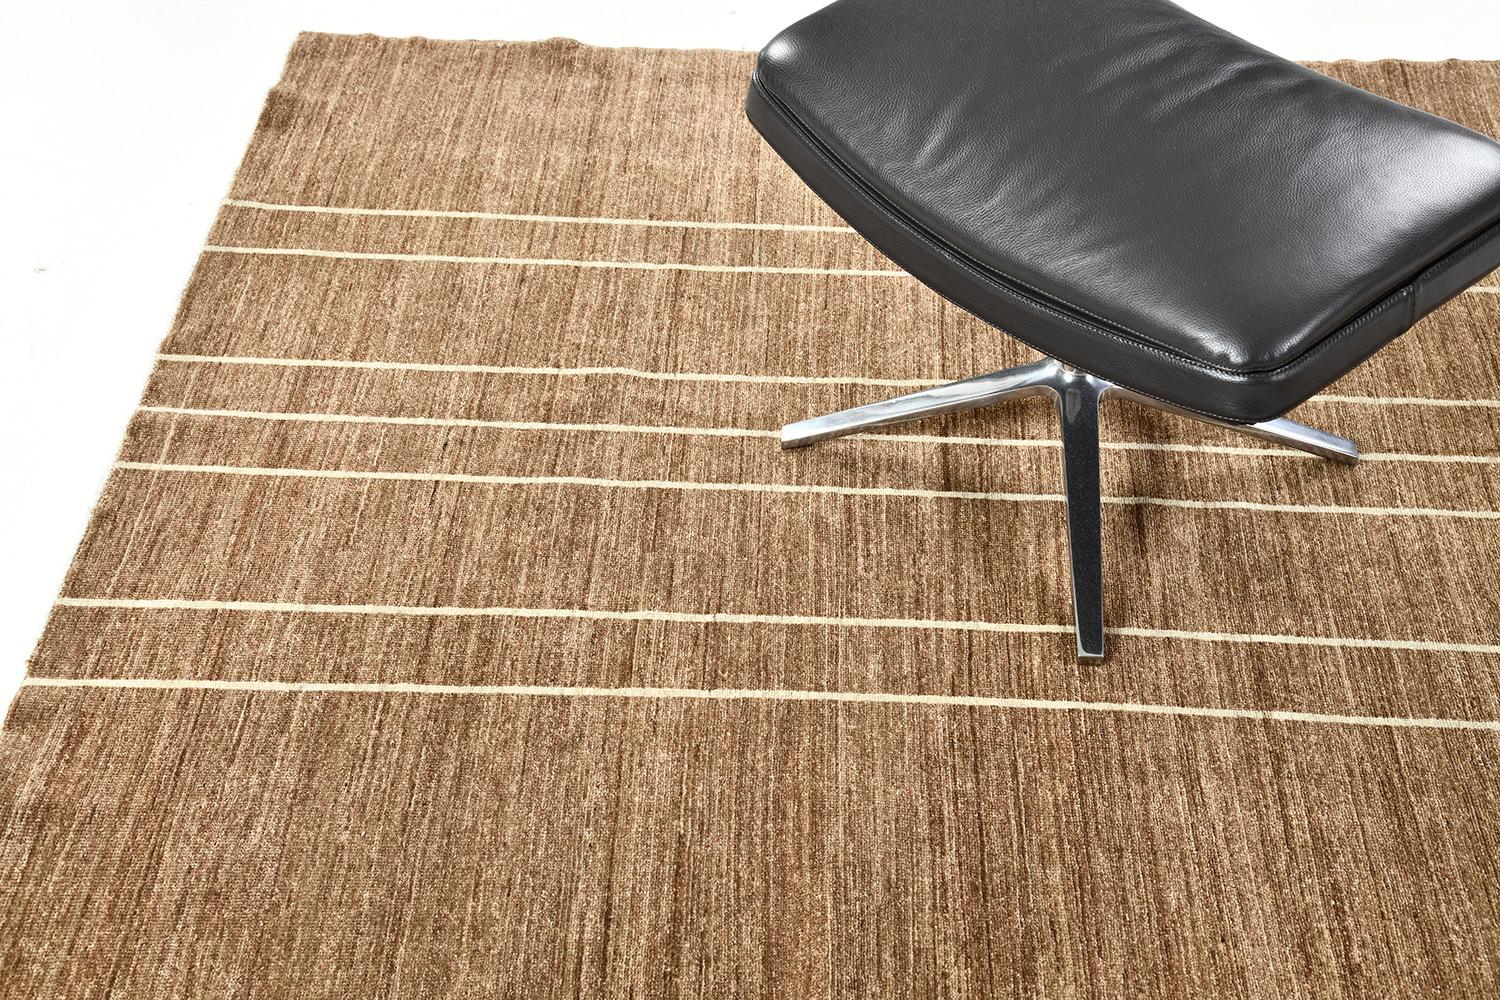 Une création exceptionnelle de tapis Modern Mondrian qui établit avec élégance l'exceptionnelle complexité à travers un design de contours clairs à un trait horizontal de brun umbre. Grâce à sa polyvalence, cette pièce magistrale fabriquée à partir